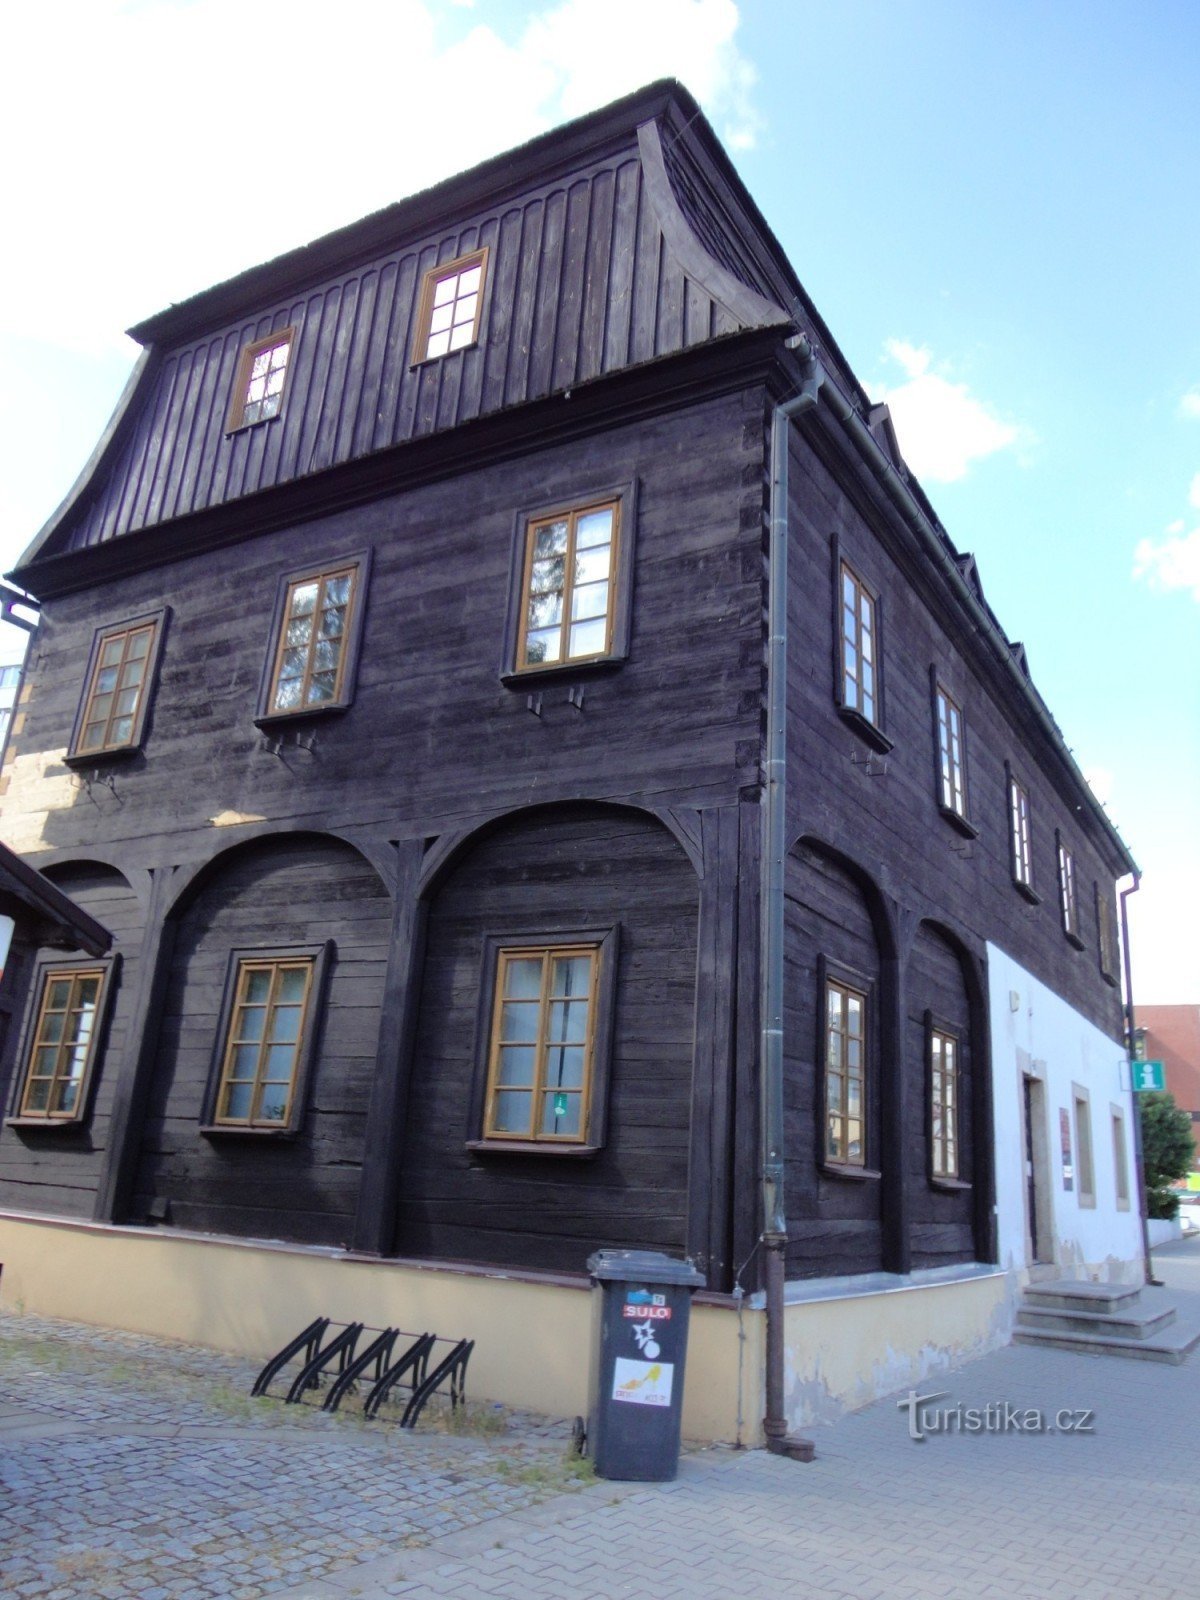 Nový Bor - 46. számú városi ház